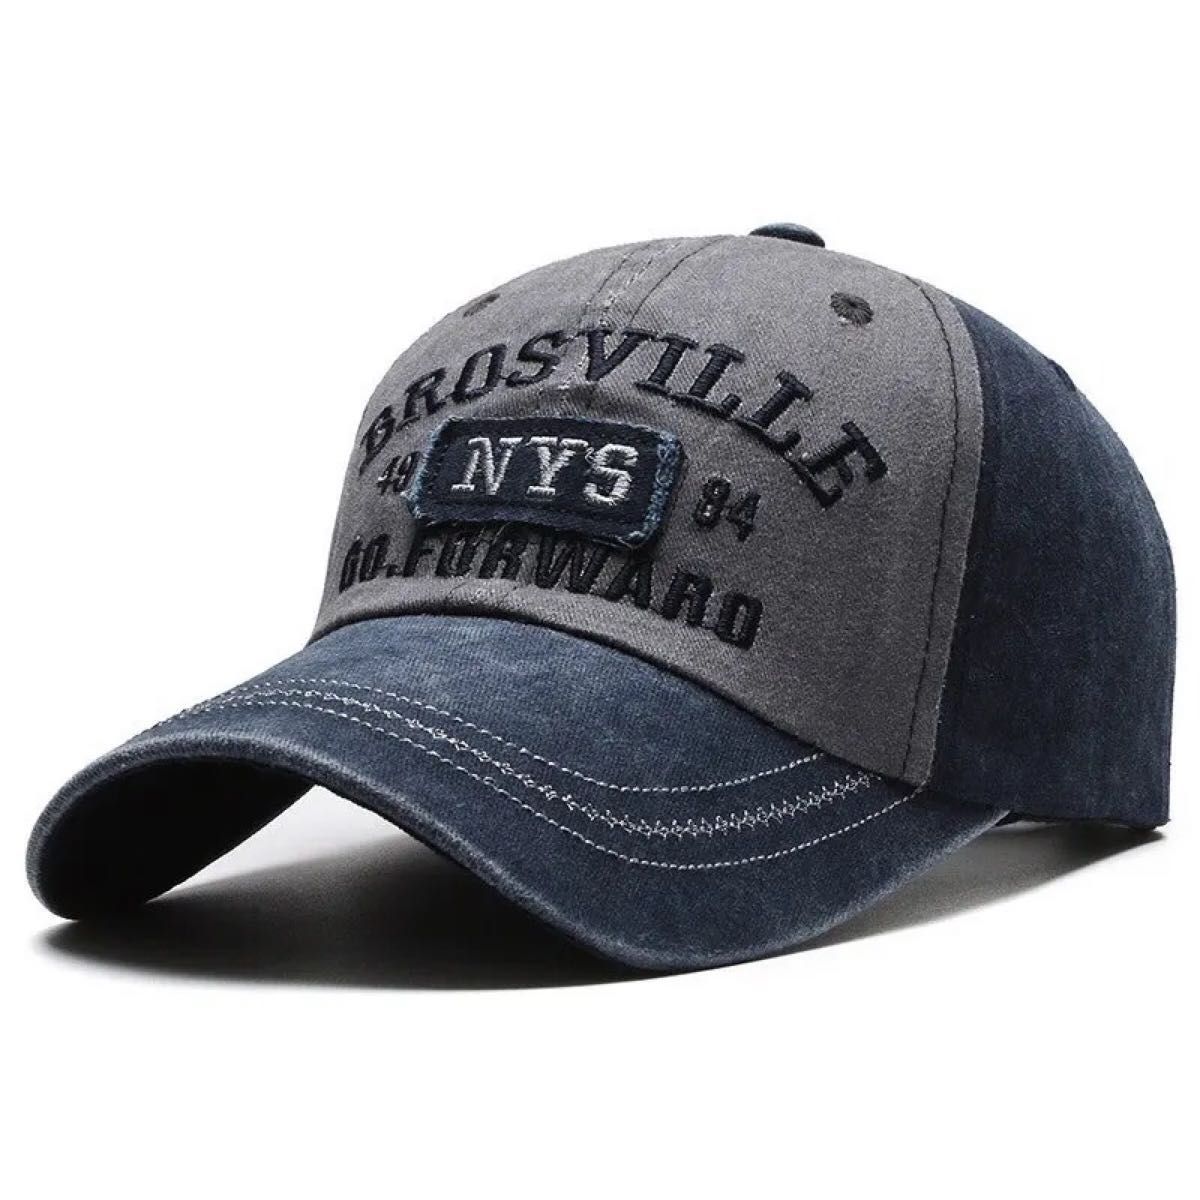 レア物新品 NYロゴ ブラックキャップ 帽子LA ベースボール ストリート 野球帽 男女兼用 ユニセックス キャップ帽子 ワーク